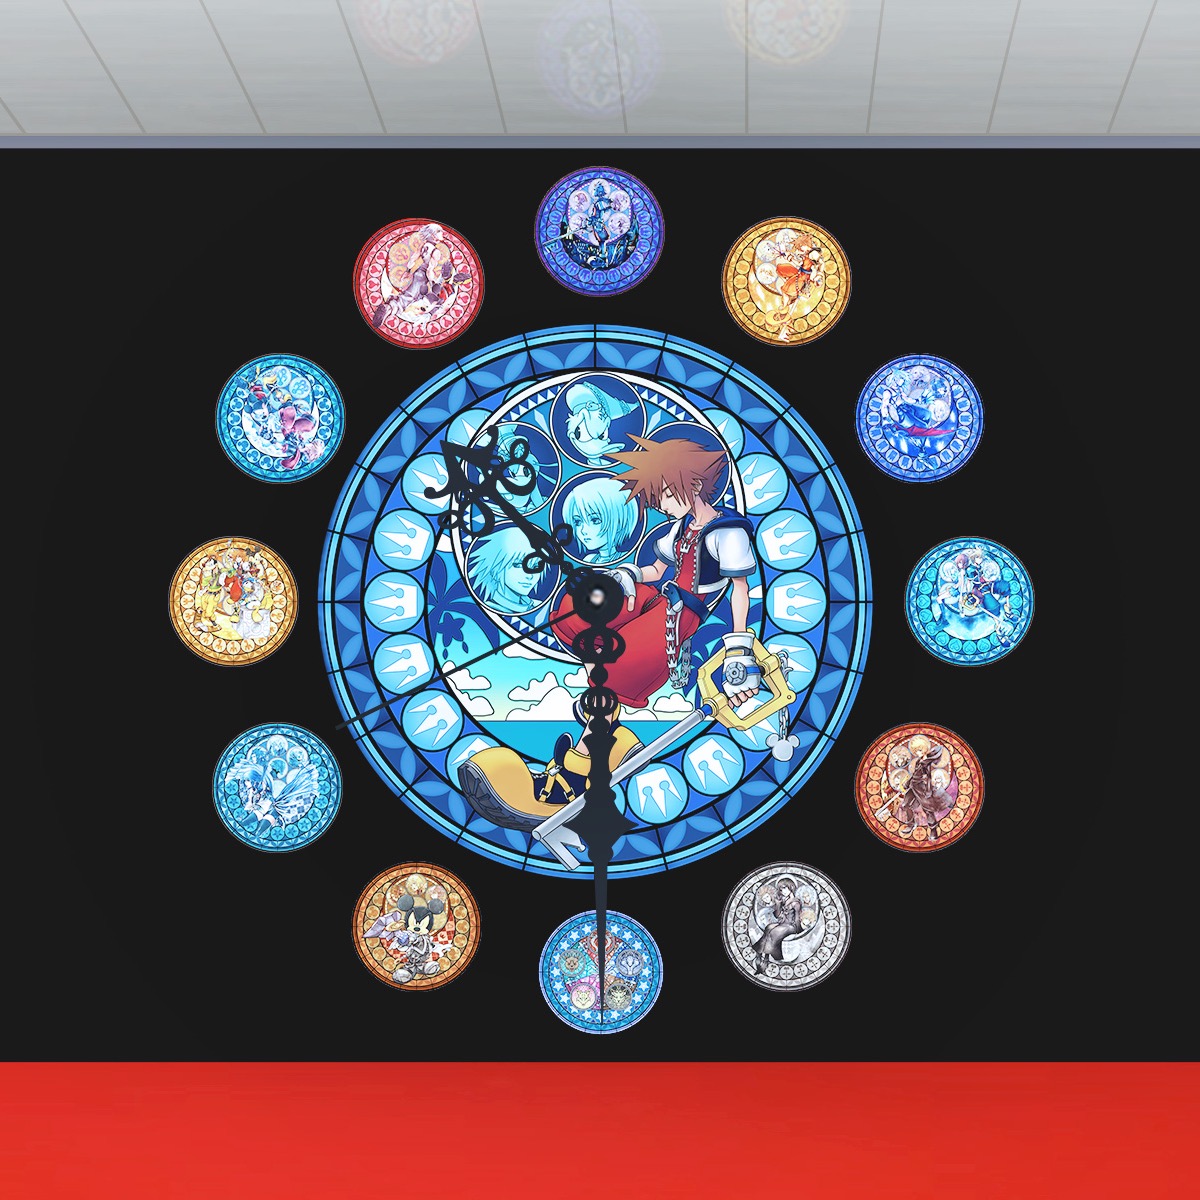 画像集no 016 キングダムハーツ のステンドグラスを再現した巨大時計が1月9日から新宿駅のメトロプロムナードで展示 1点ものの時計にしてプレゼントする企画も